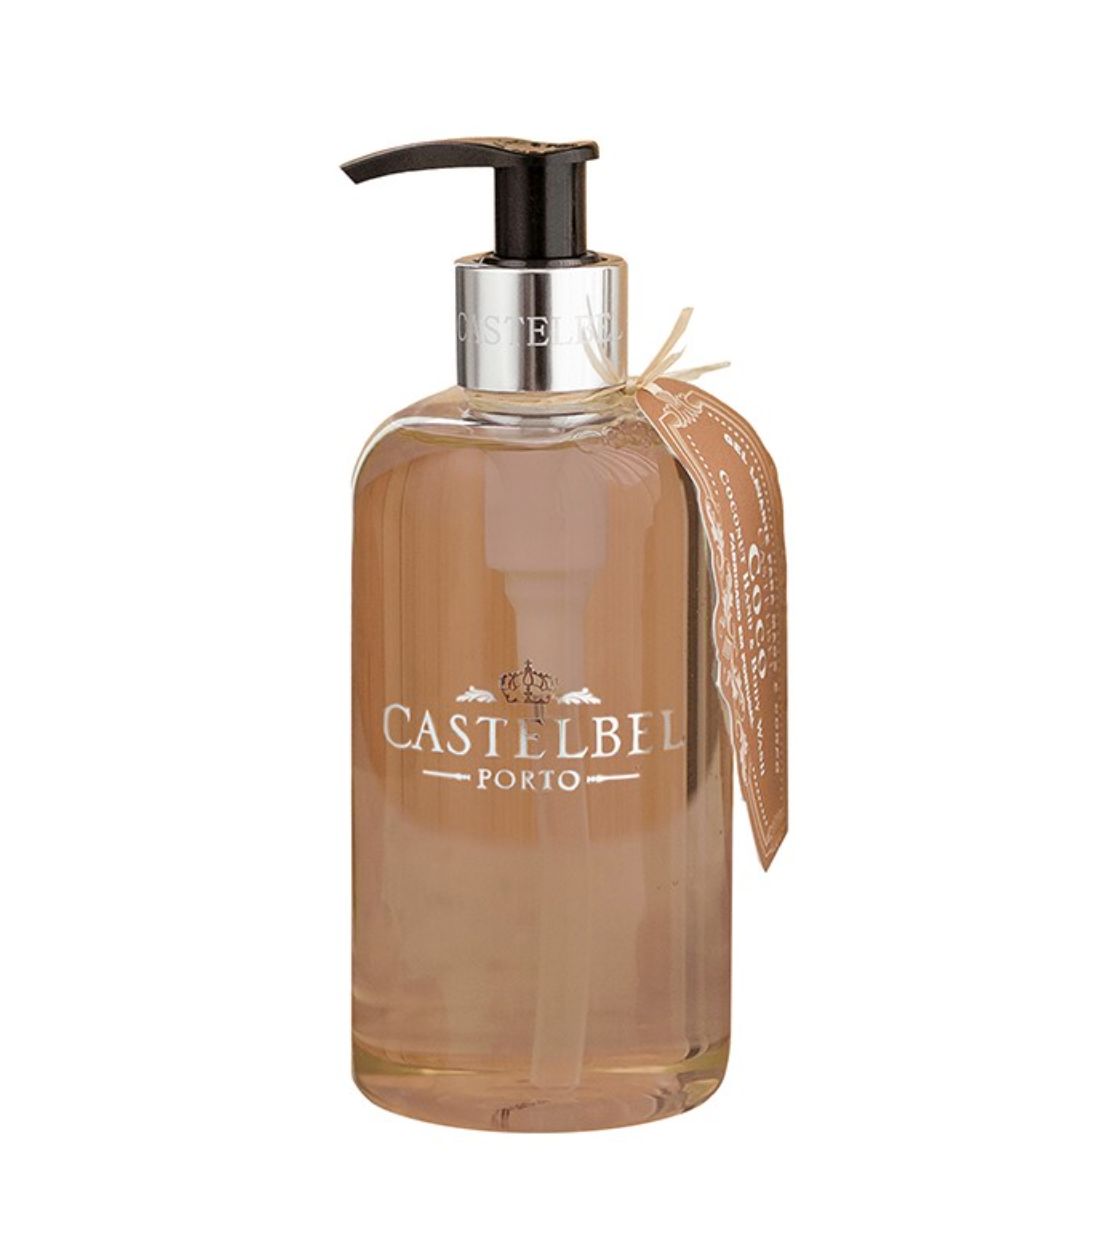 Castelbel - Liquid Soap 300ml - Various Scents